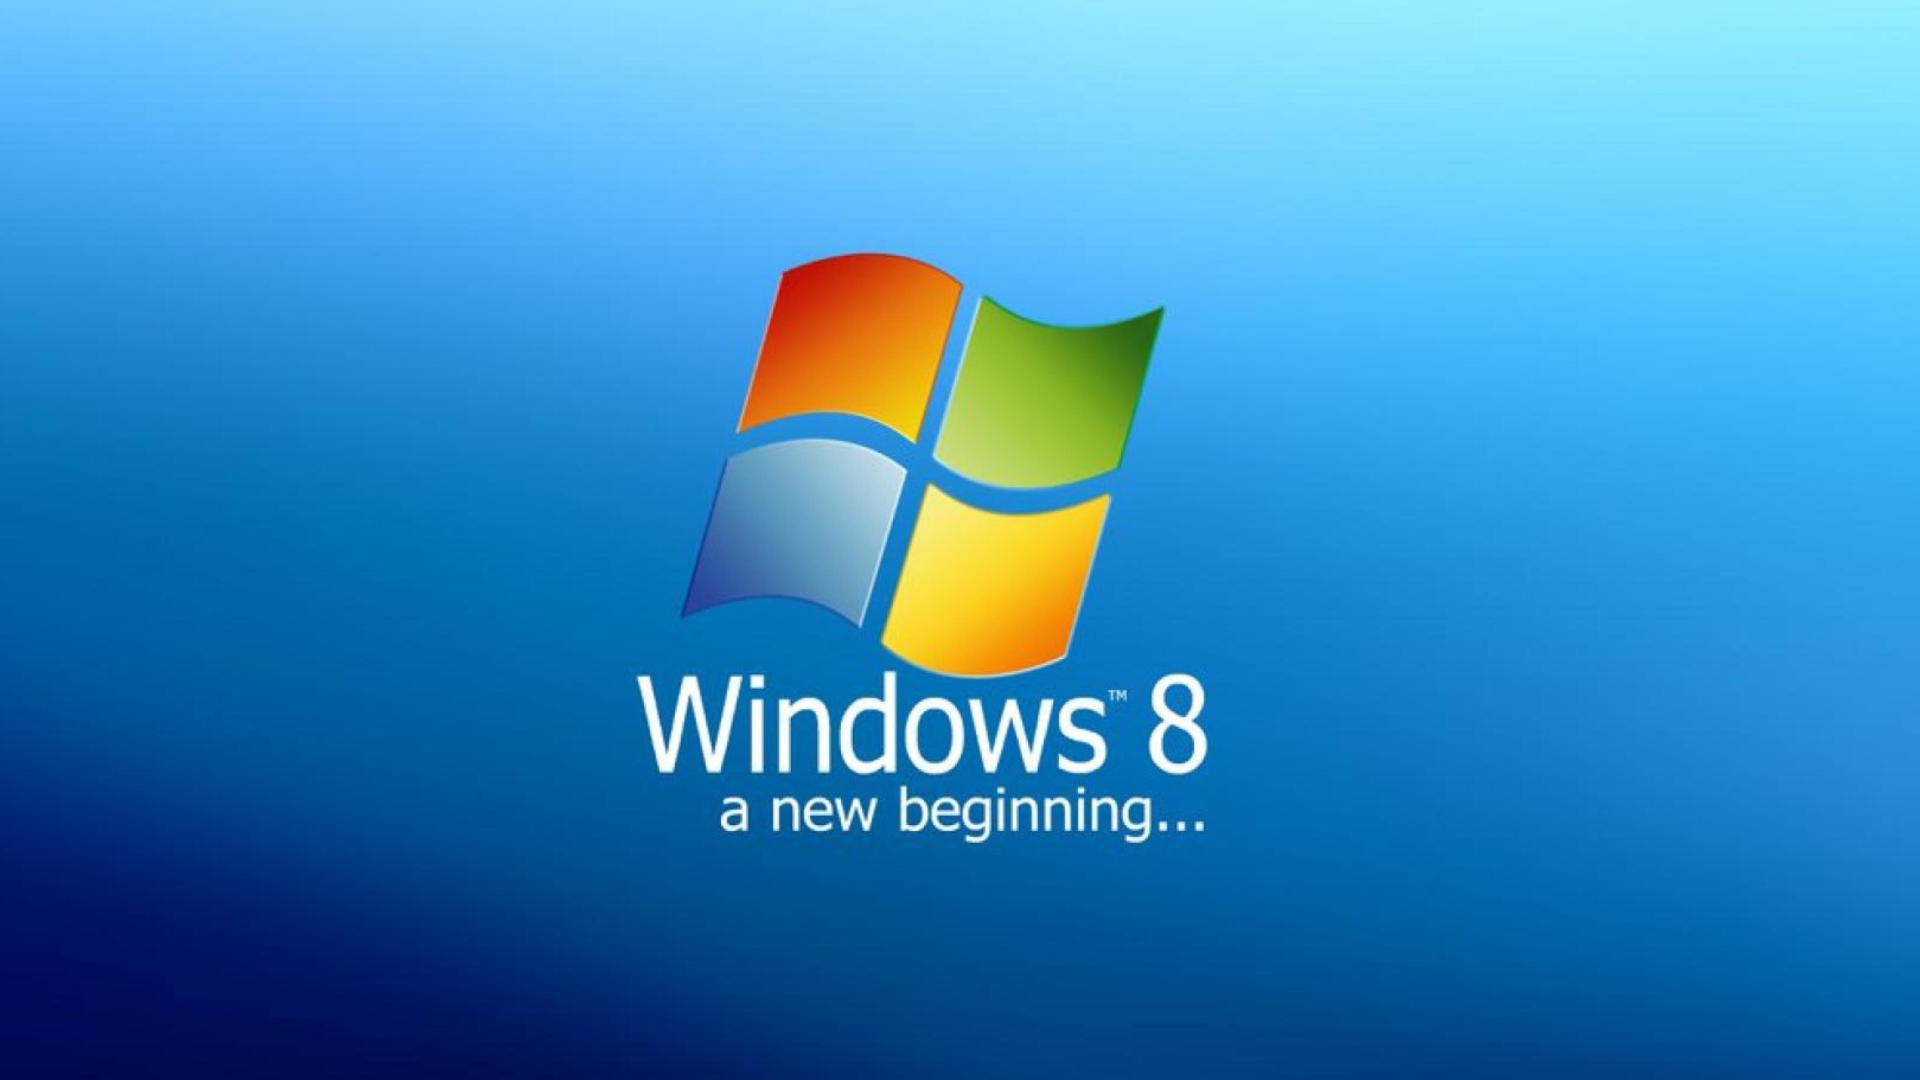 Обои A New Beginning Windows 8 1920x1080